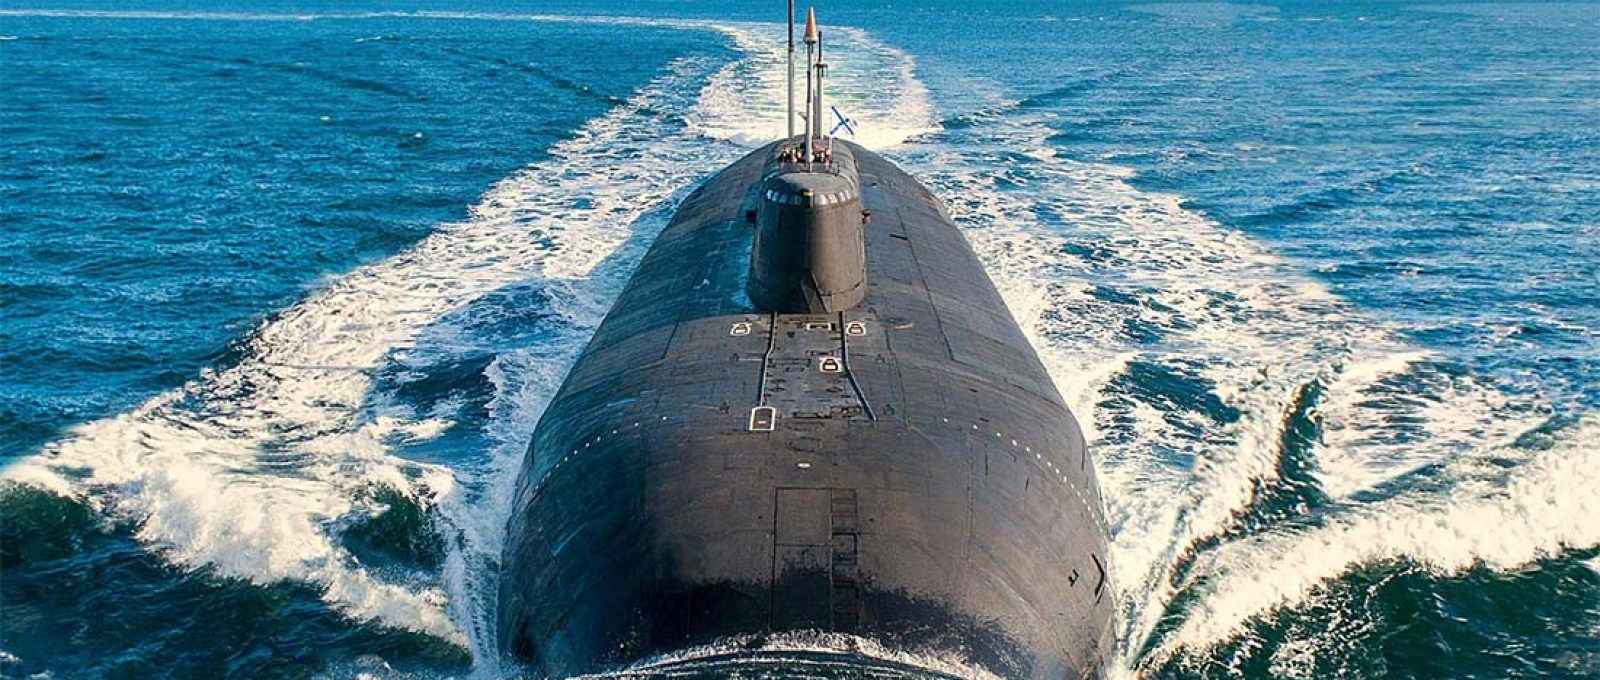 Submarino K-329 Belgorod da Marinha da Rússia (Ministério da Defesa da Federação Russa).